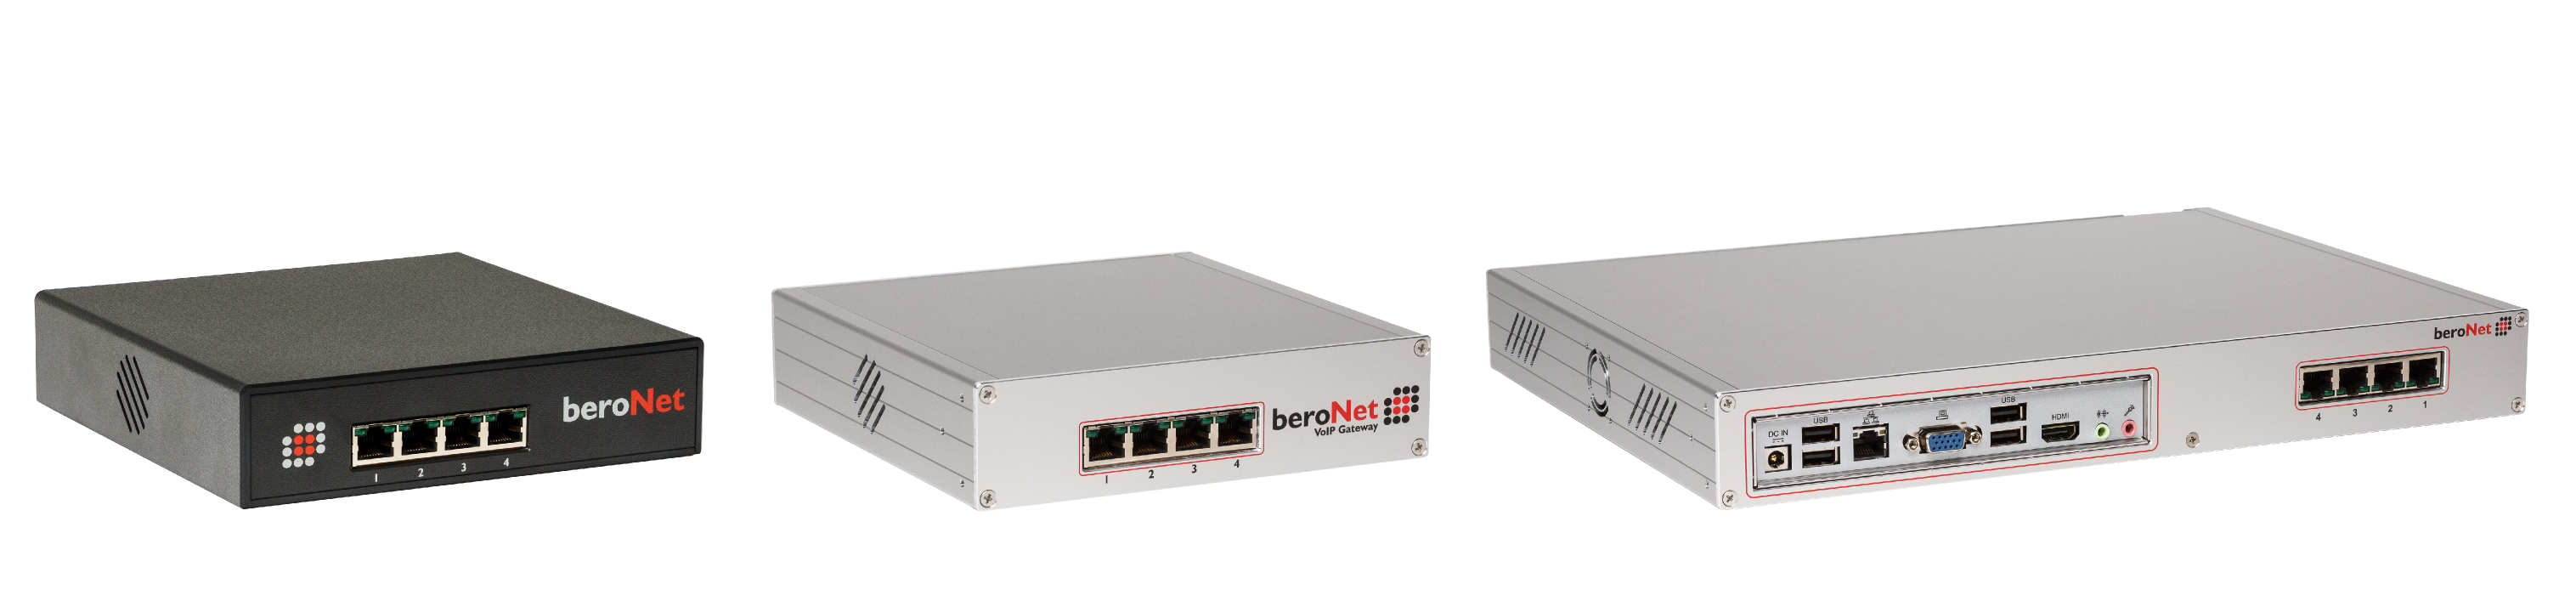 BERONET – Intégrateur réseaux